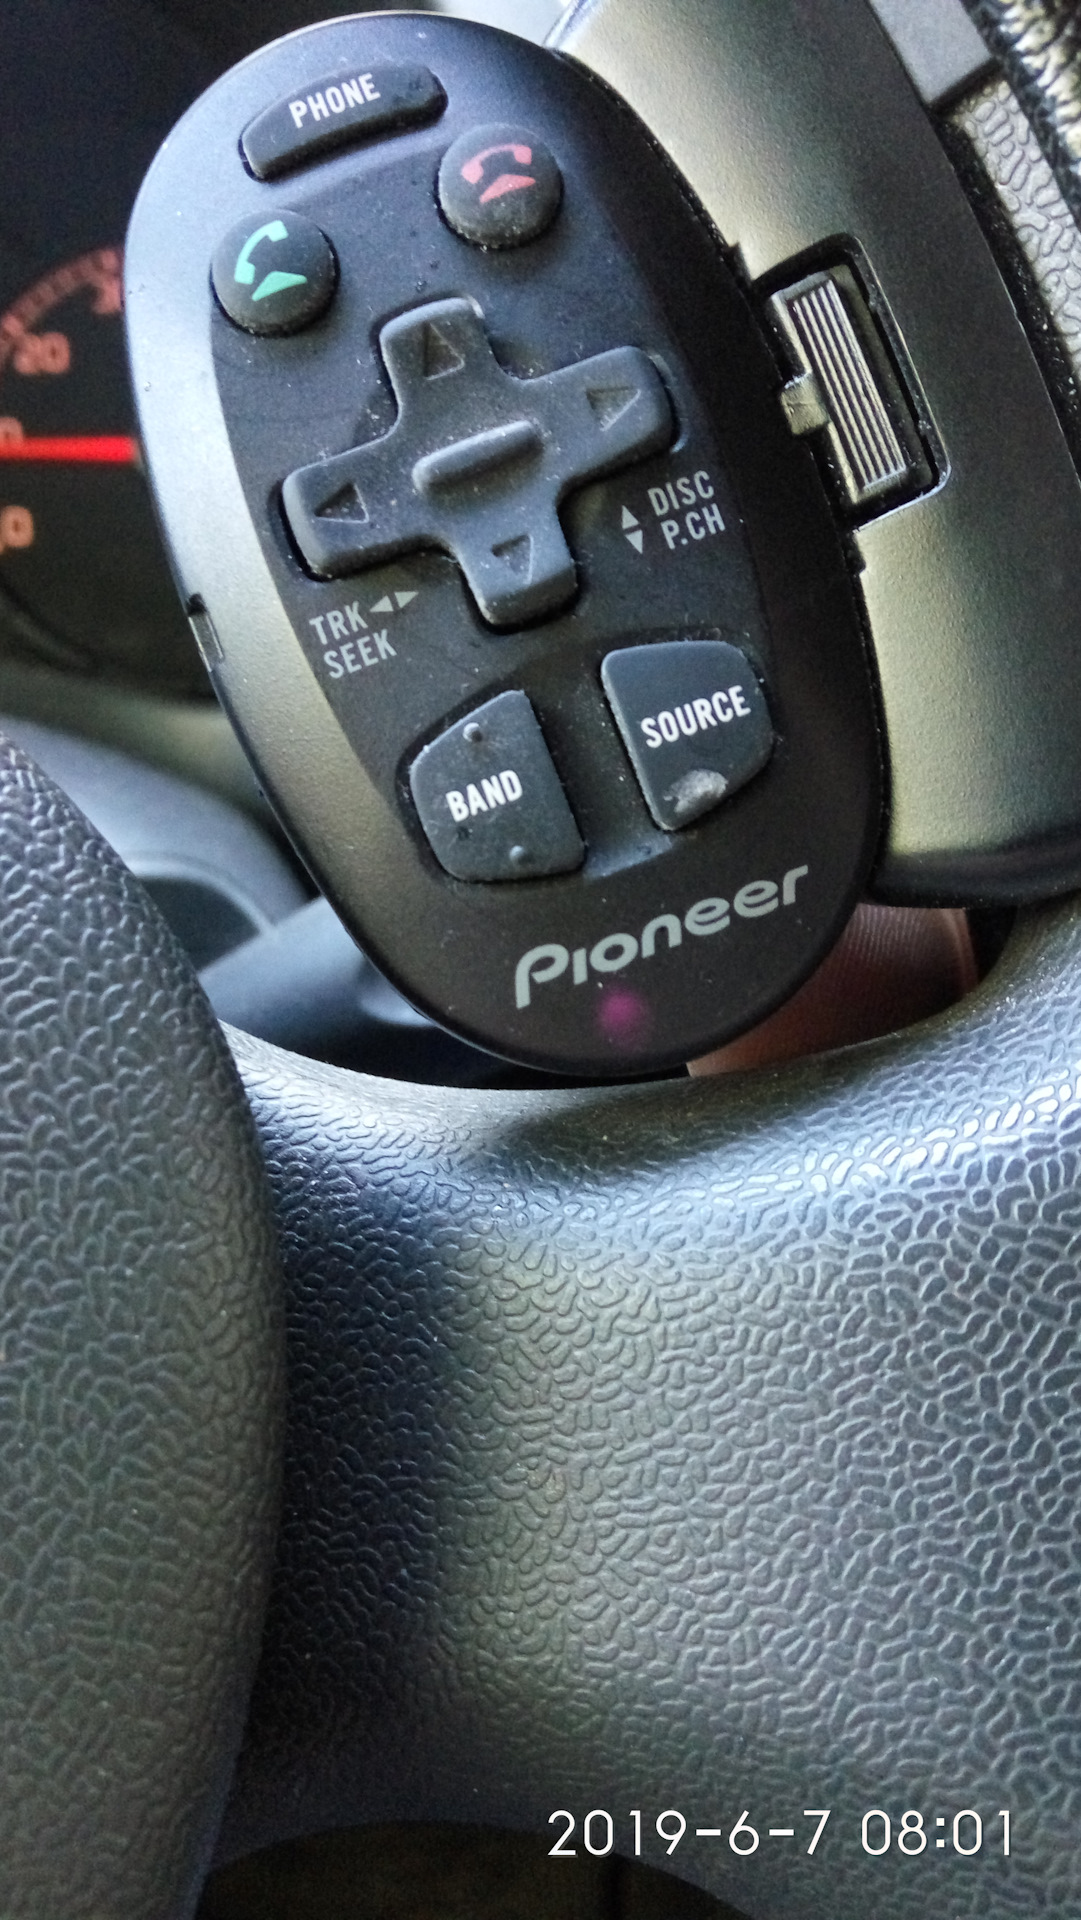 Пульт магнитолы Ford Focus 2. Пульт магнитолы Sony. Пульт магнитолы ОМС. Пульт для магнитолы андроид на руль Пежо 206. Приставка не видит пульт